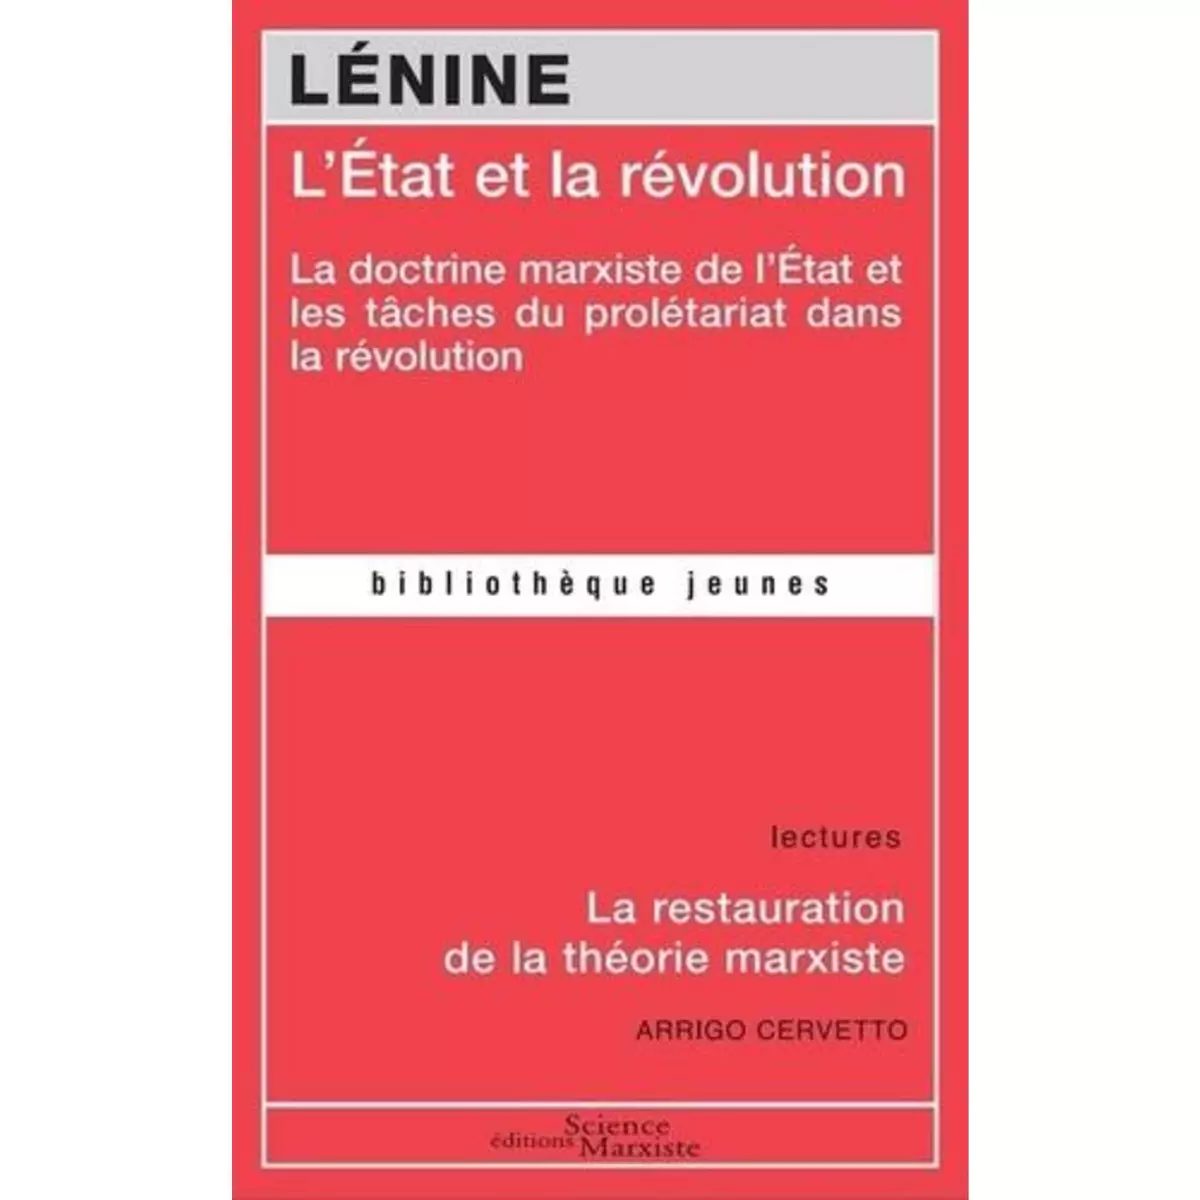  L'ETAT ET LA REVOLUTION. LA DOCTRINE MARXISTE DE L'ETAT ET LES TACHES DU PROLETARIAT DANS LA REVOLUTION, Lénine